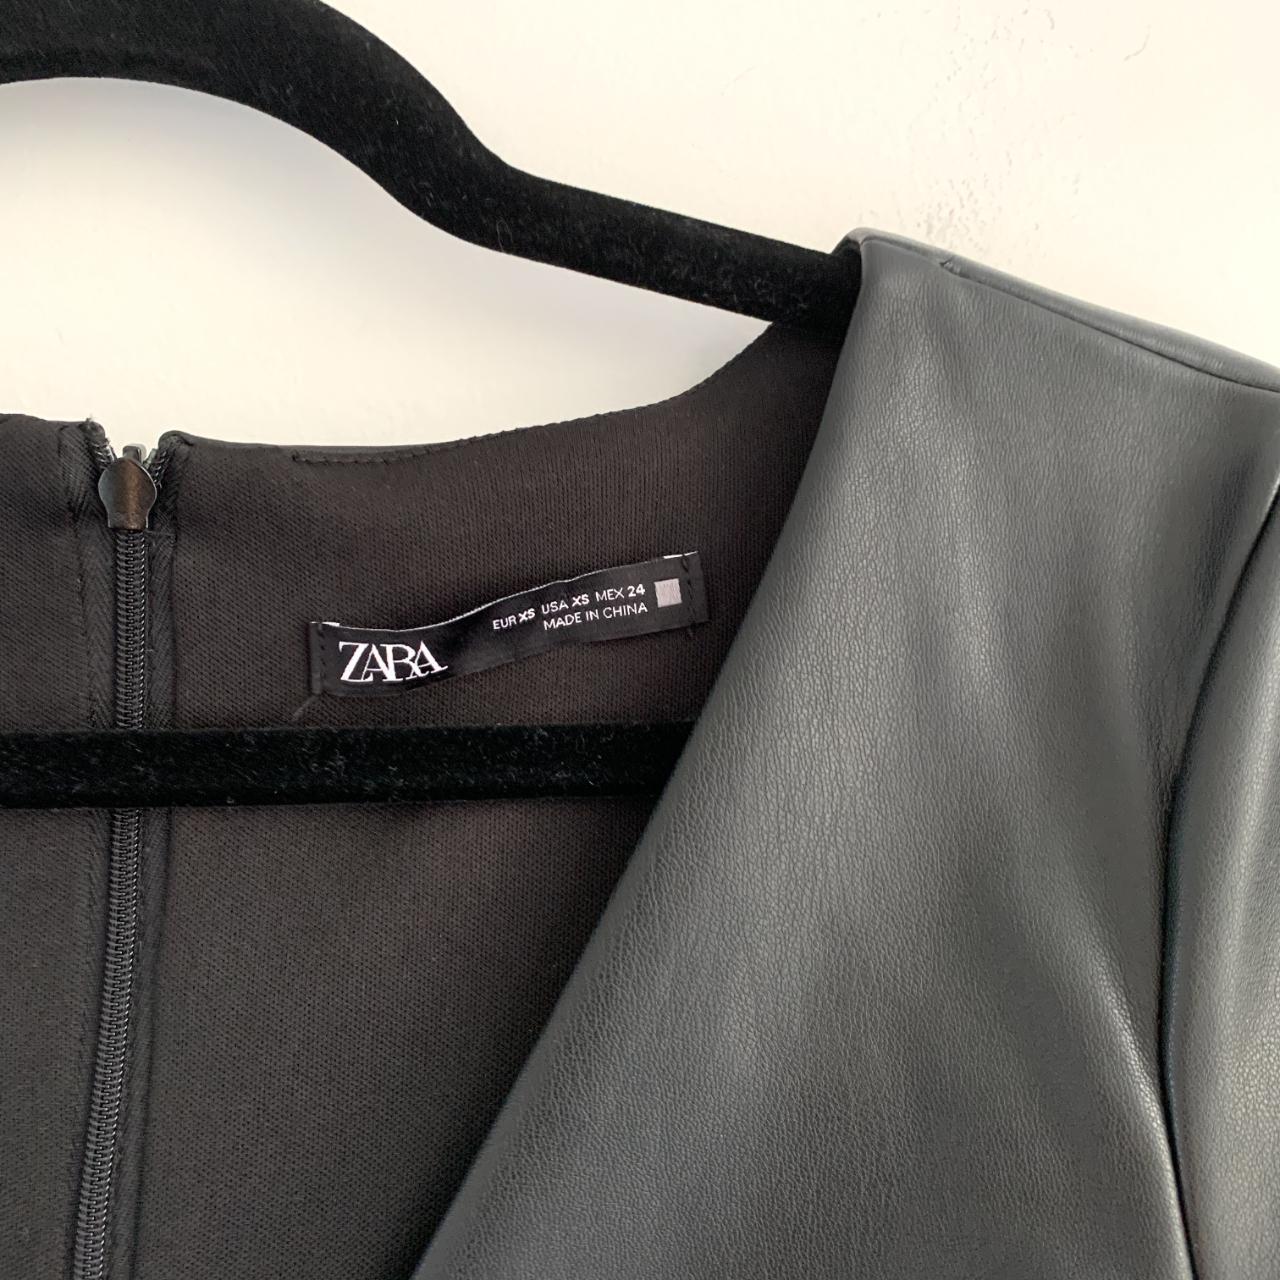 Zara Black Ruched Faux Leather V-neck Short Sleeve... - Depop